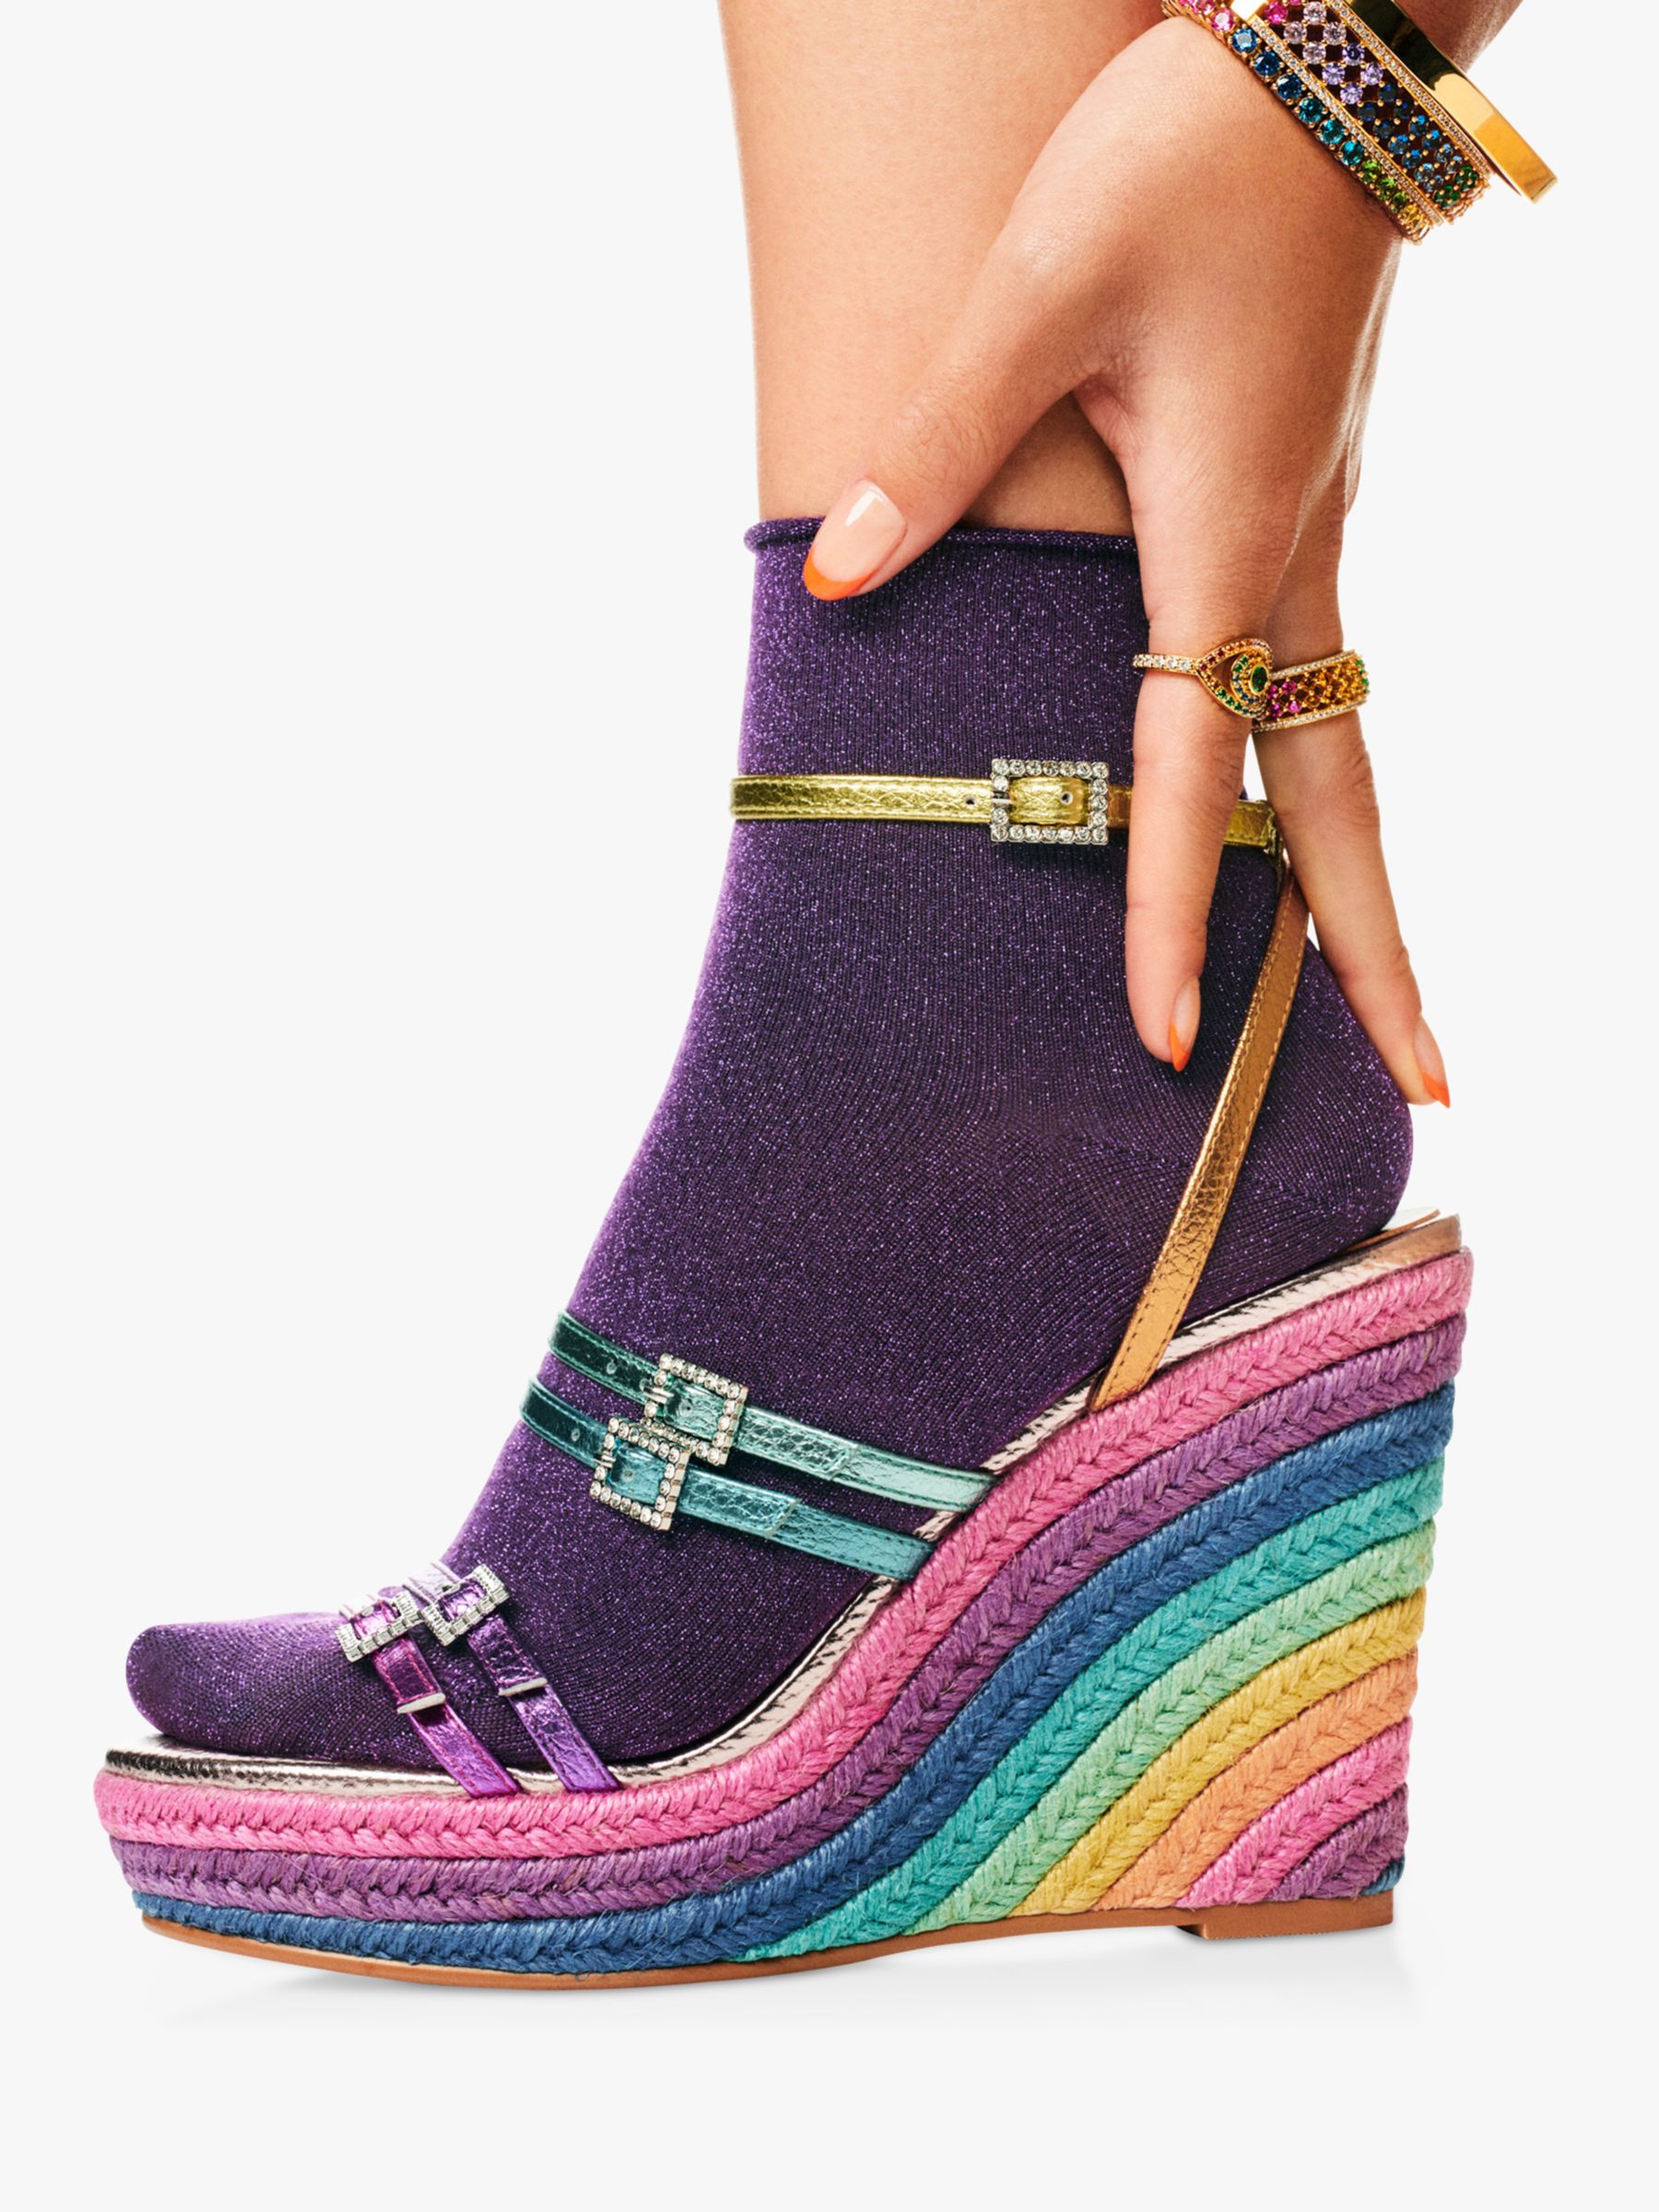 Buy Kurt Geiger London Pierra Wedge Heel Sandals, Multi Online at johnlewis.com